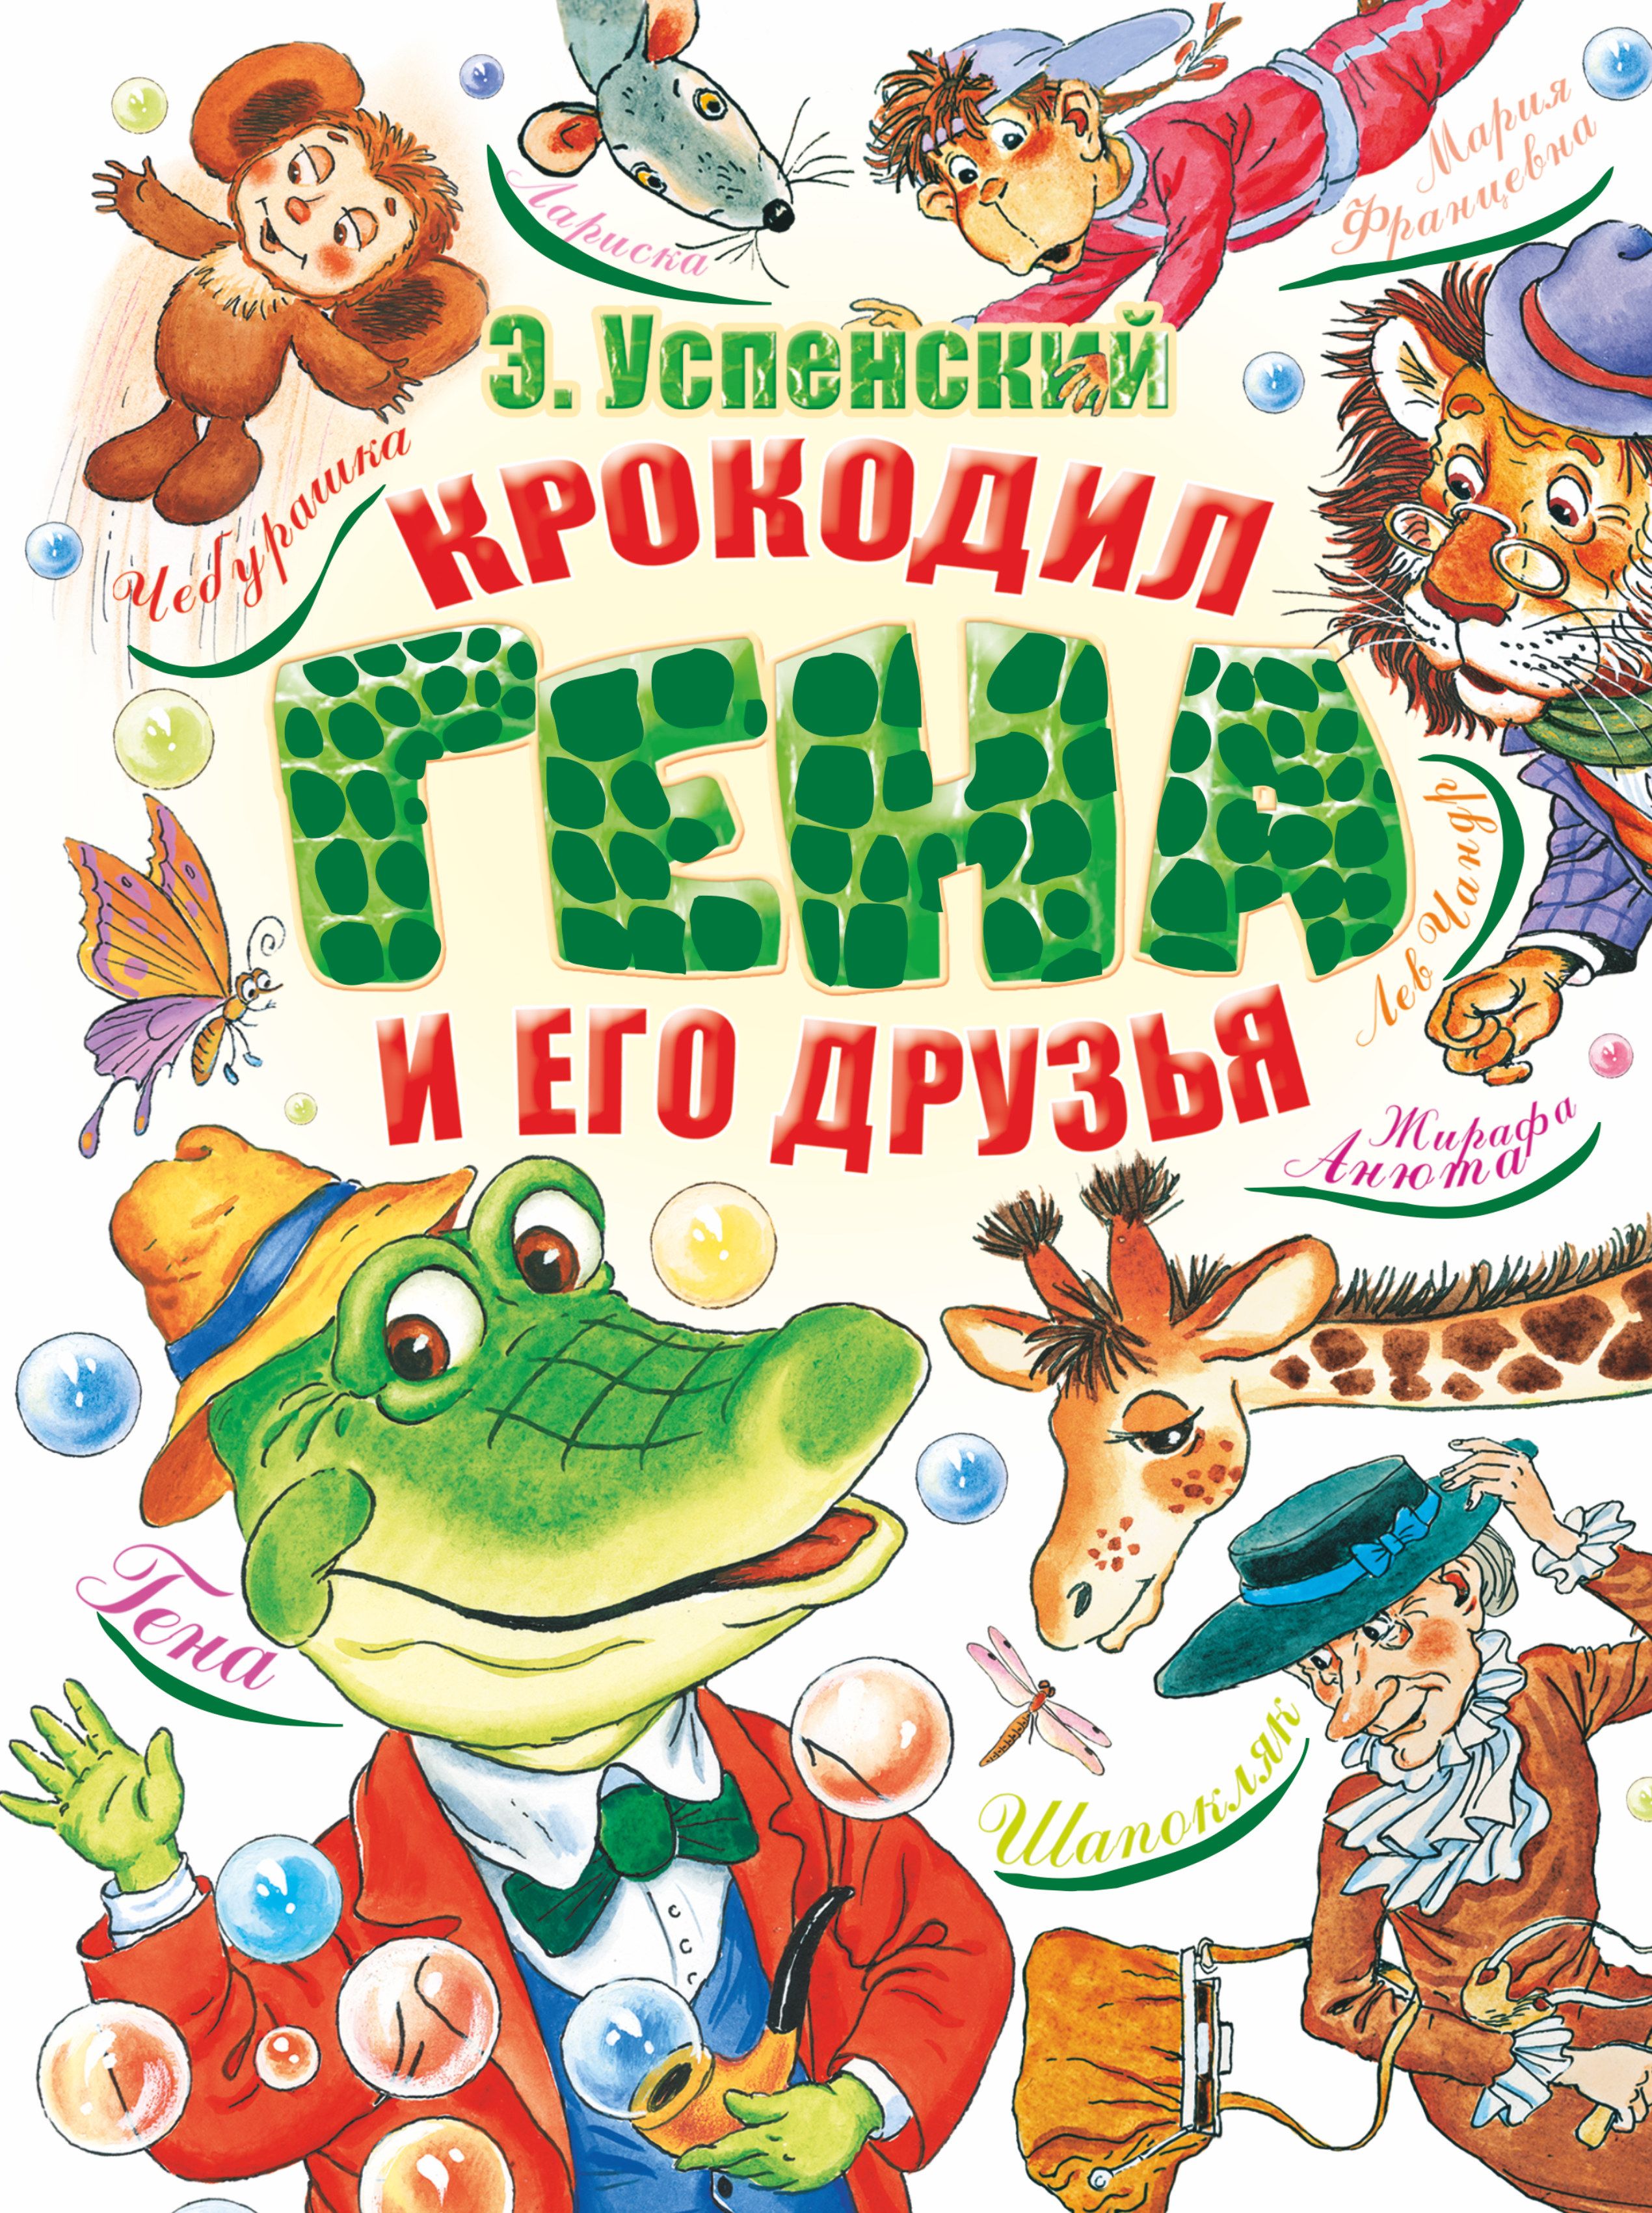 «Крокодил Гена и его друзья» э. Успенского...